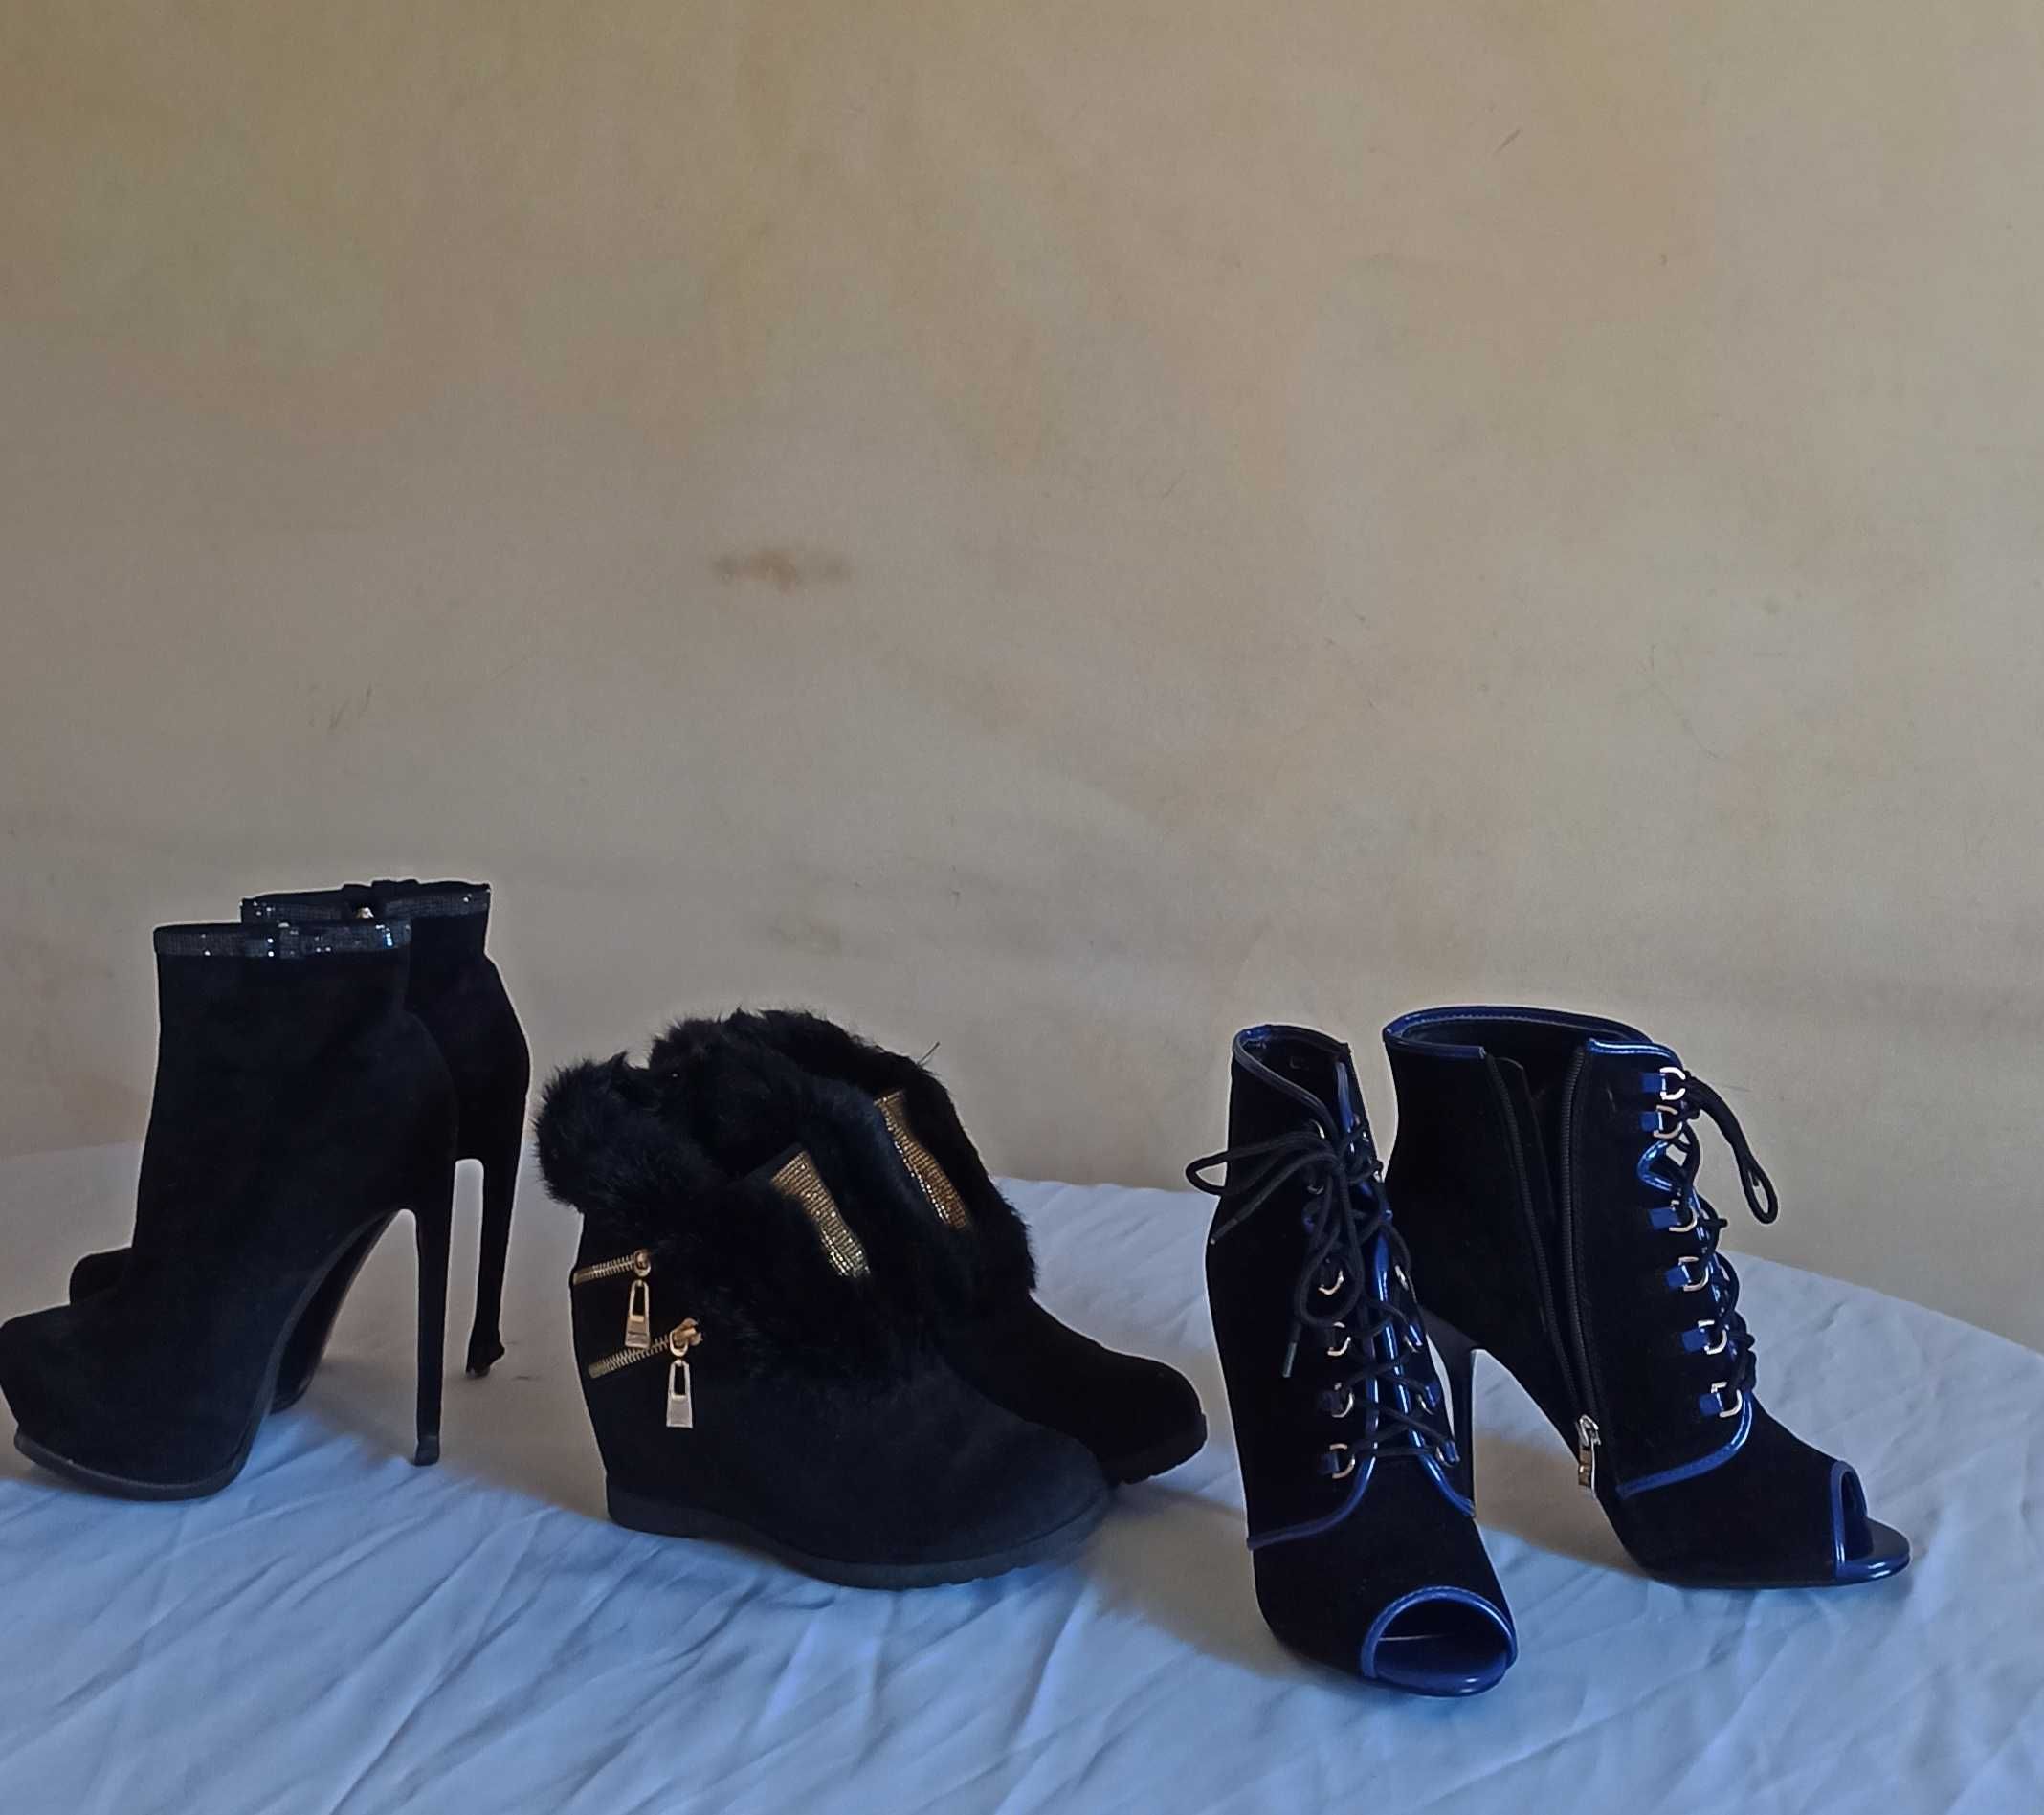 обувь женская туфли шпильки сапоги, сапожки, батильоны